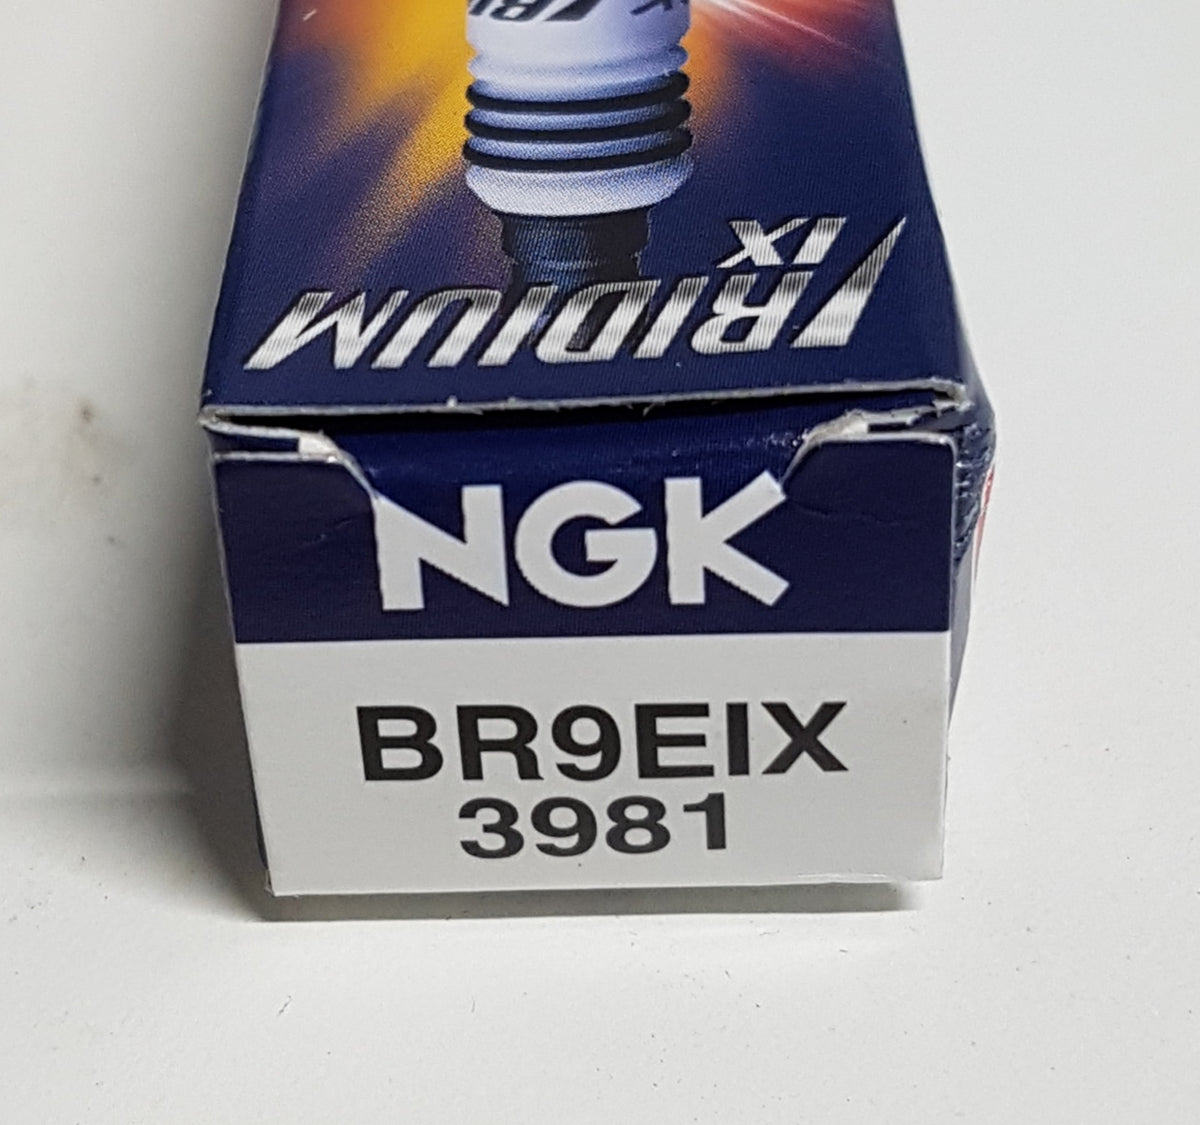 Bougie NGK BR9EIX Iridium (3981)